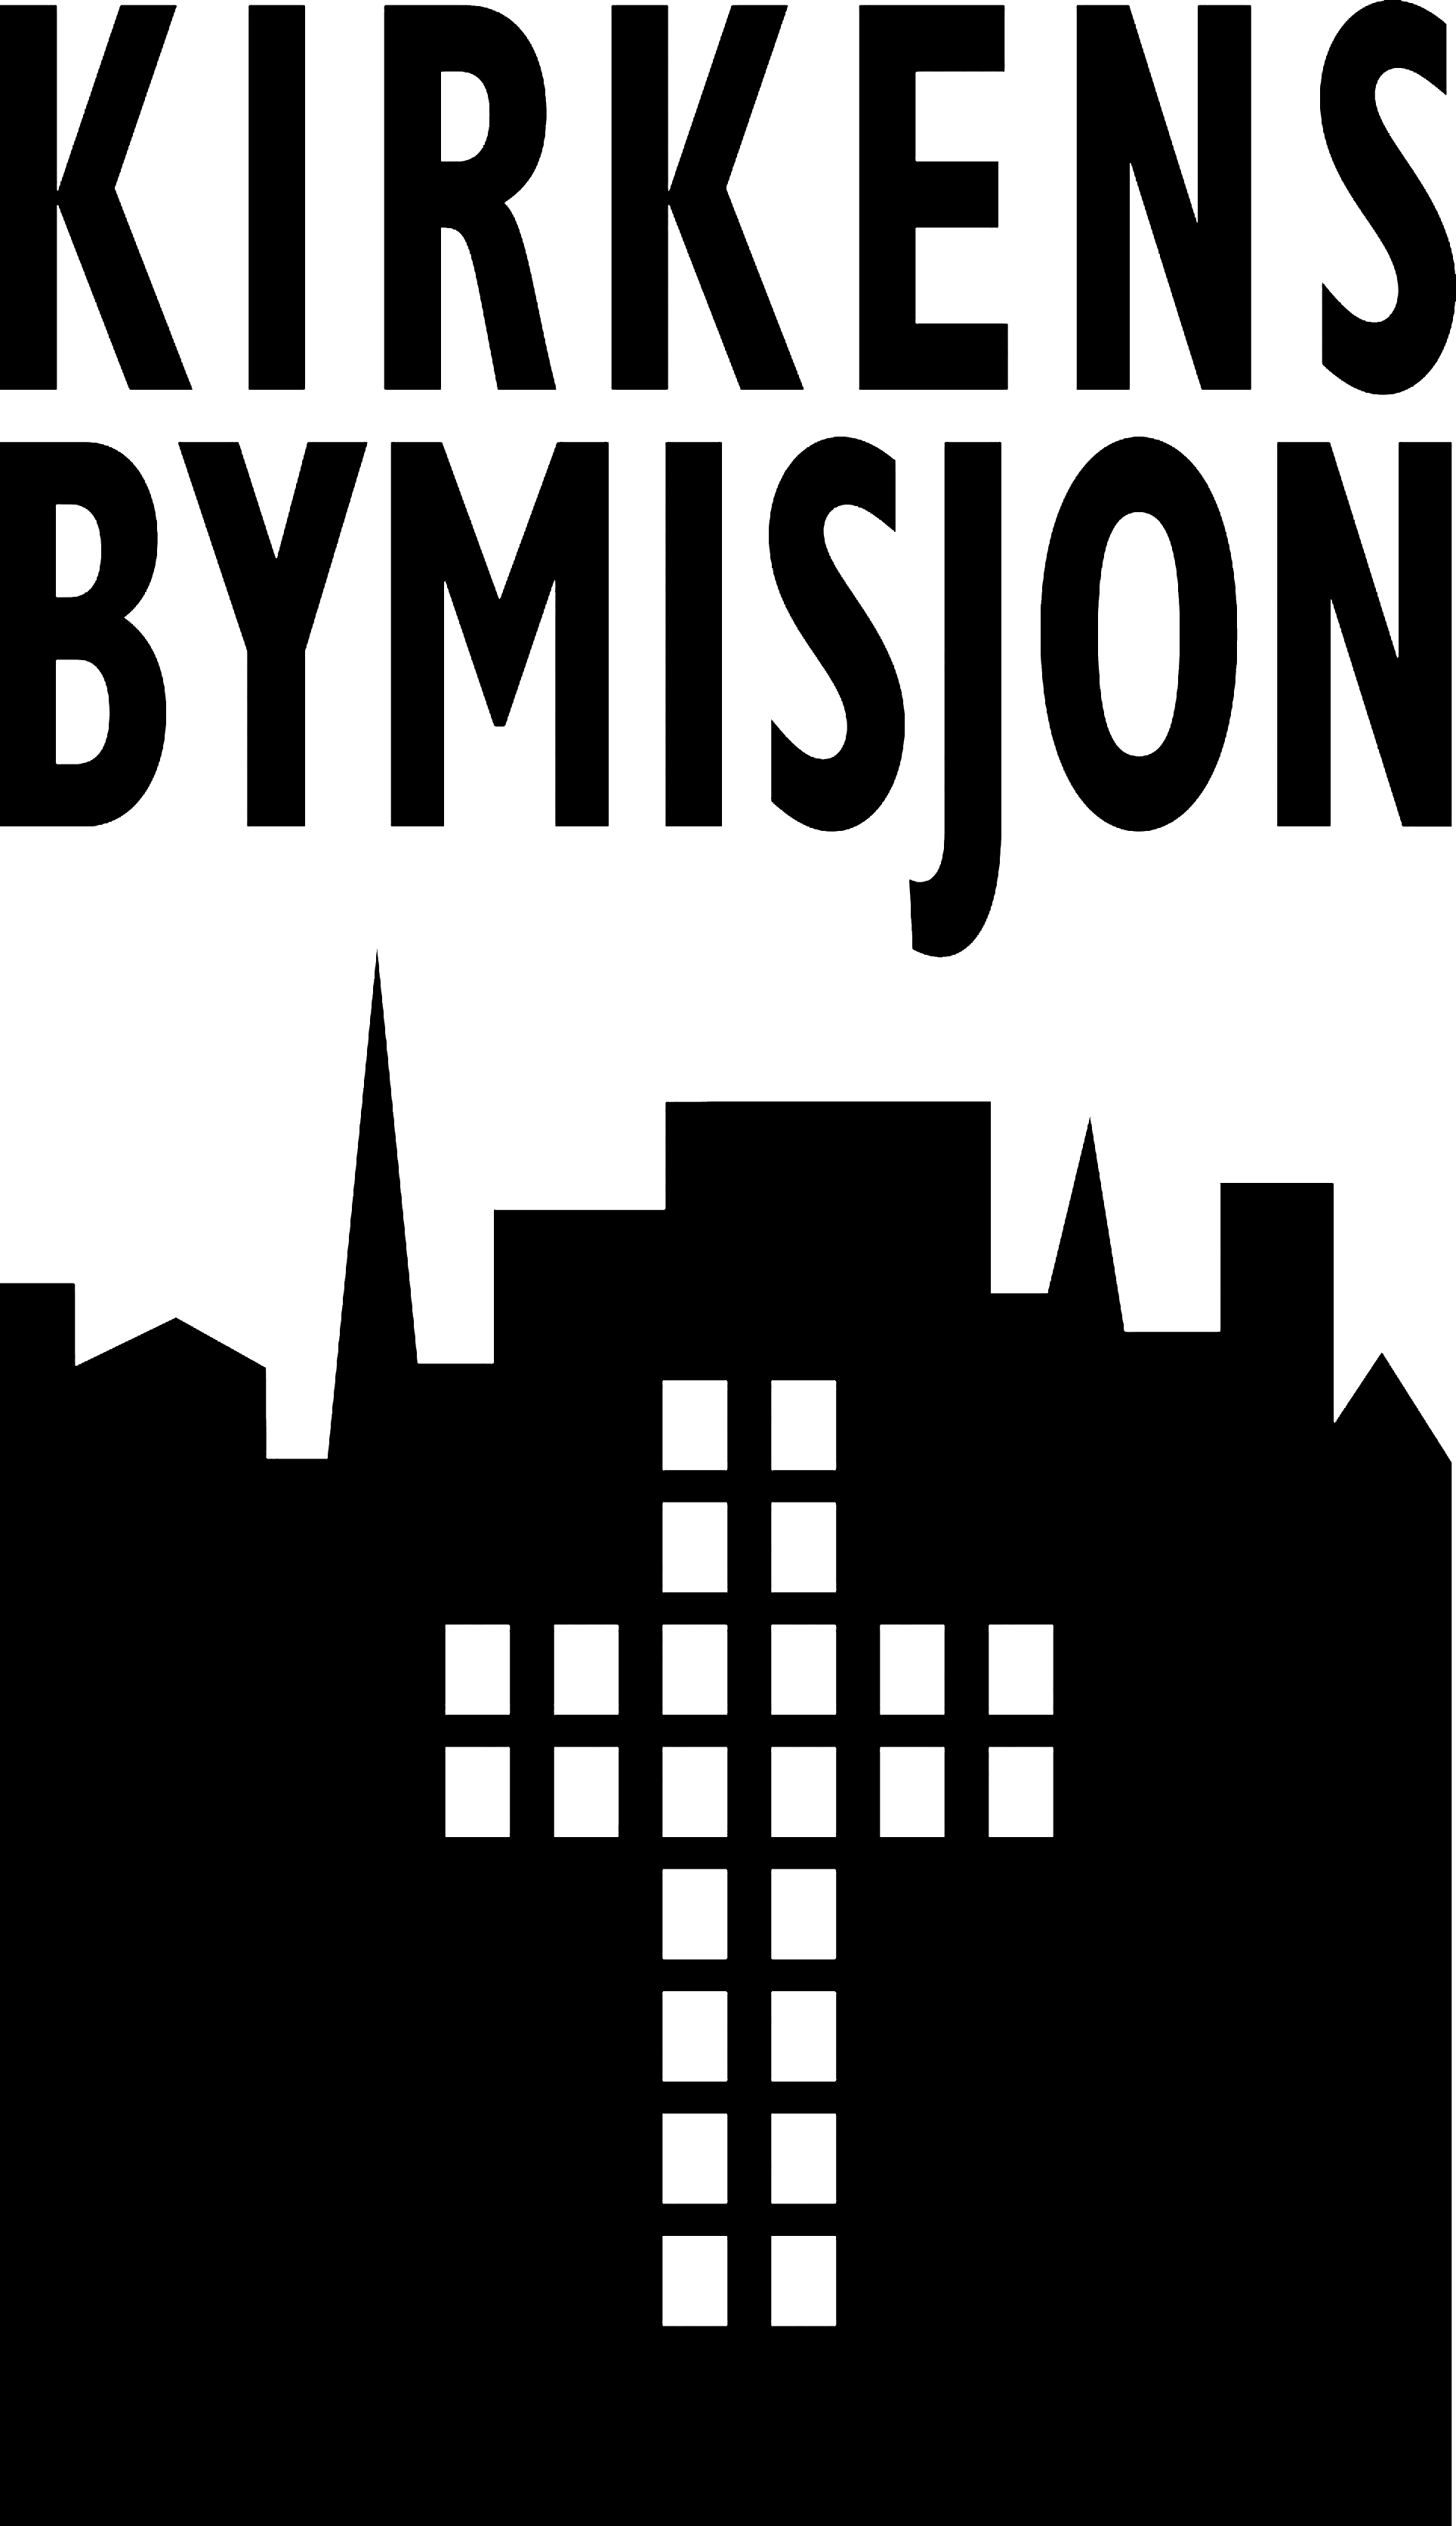 Kirkens_Bym2isjon_logo.png